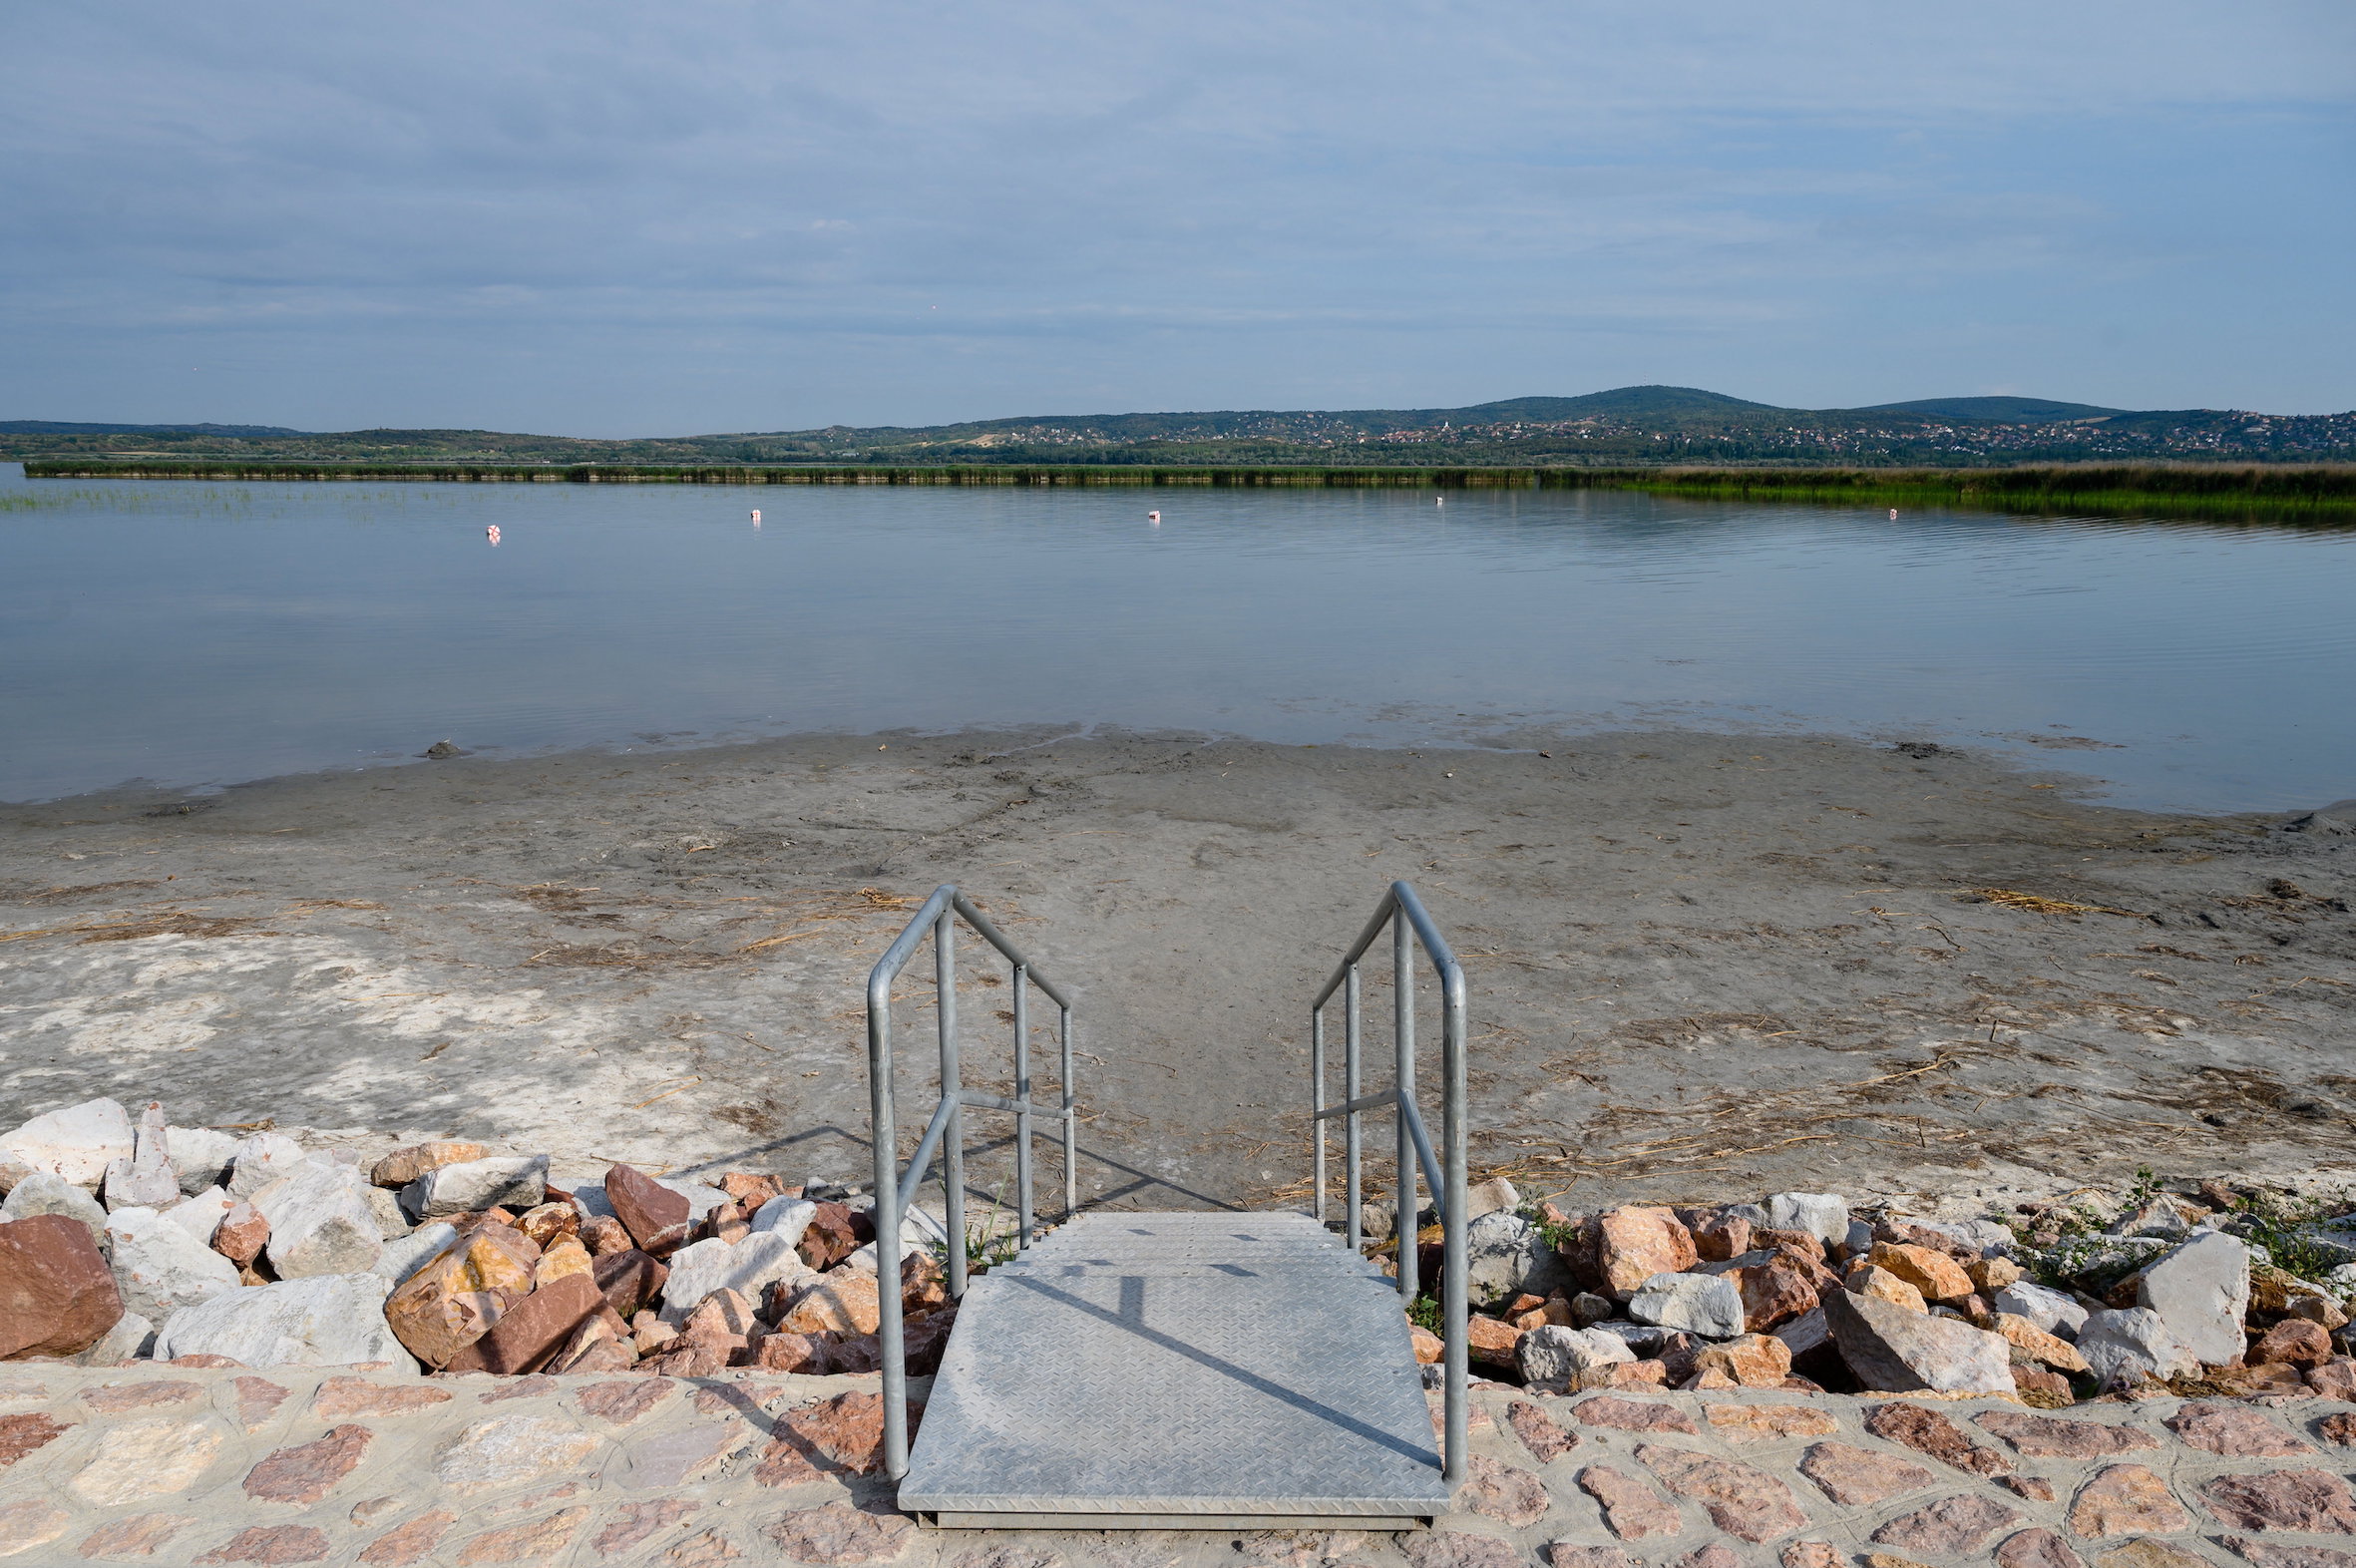 OVF: rekordalacsony a Velencei-tó vízállása